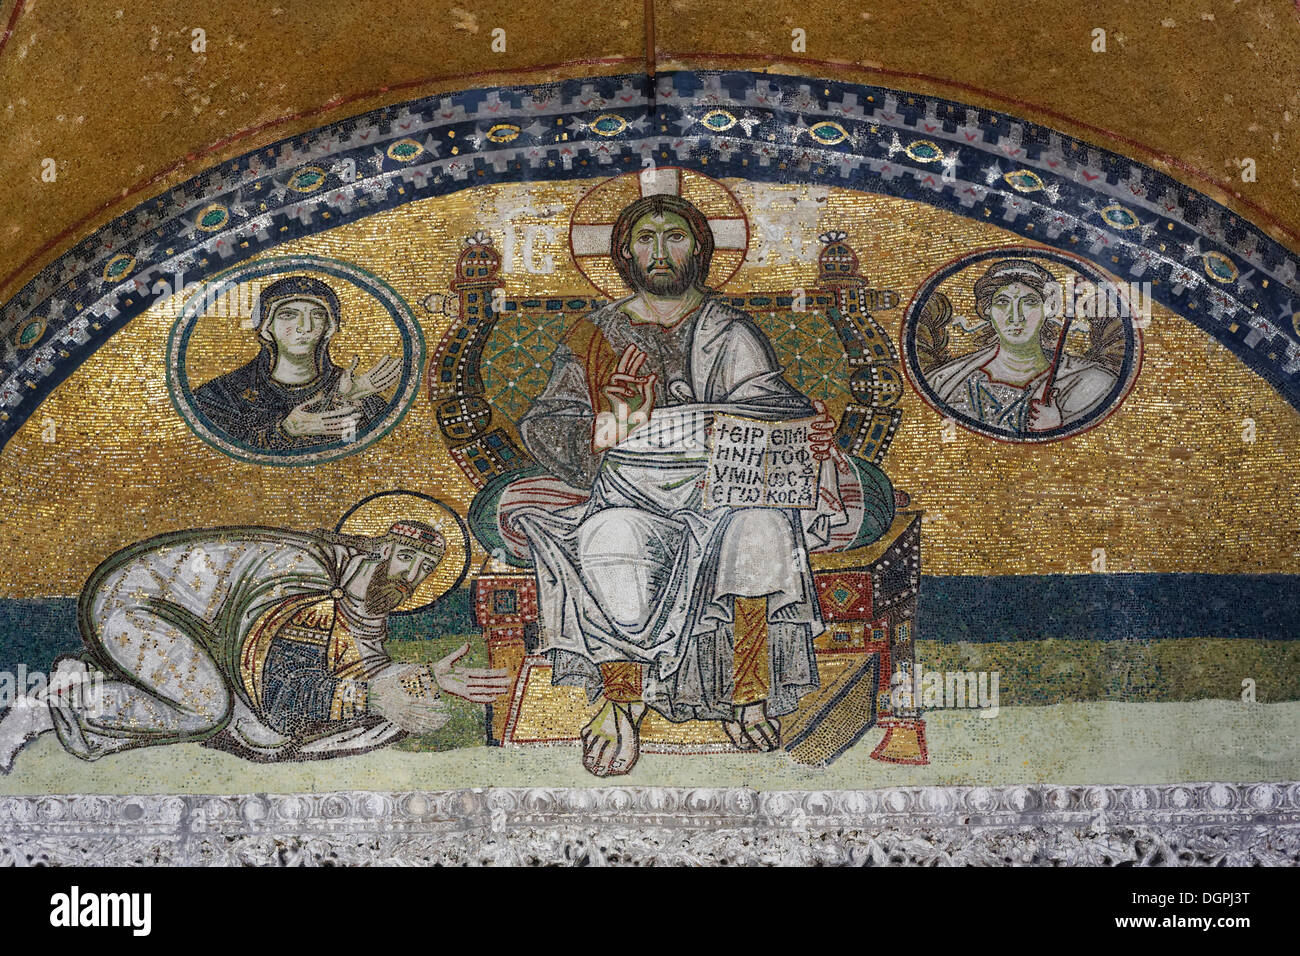 Mosaïque byzantine de Jésus sur le trône avec l'empereur Léon VI à genoux dans le narthex, Hagia Sophia, Sultanahmet, Istanbul Banque D'Images